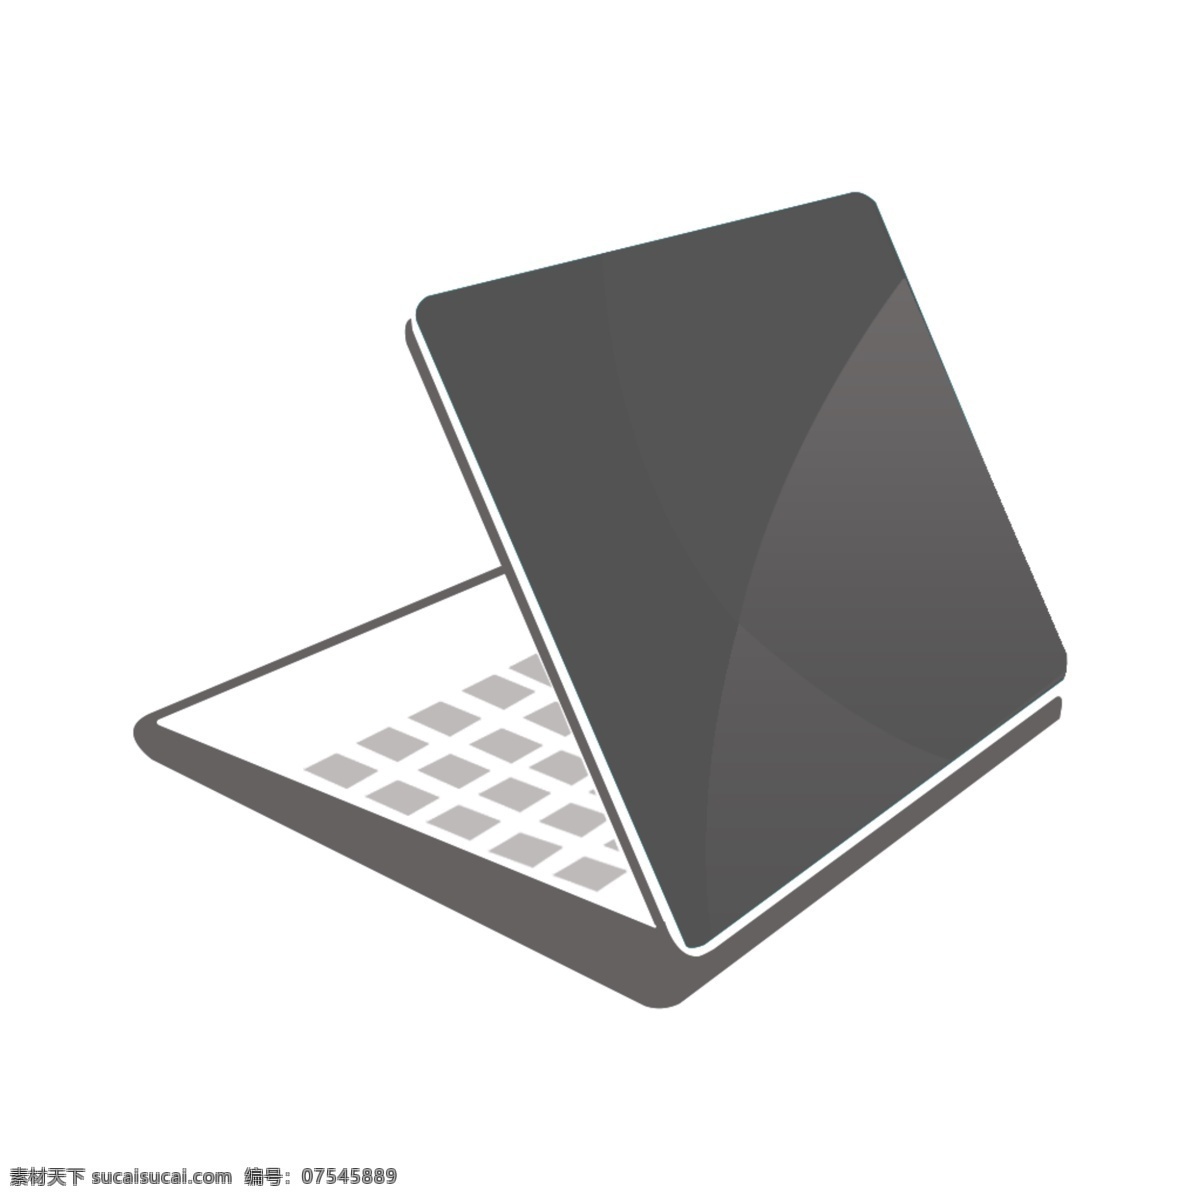 笔记本 电脑 图标 logo设计 logo素材 图标素材 lgo设计 psd源文件